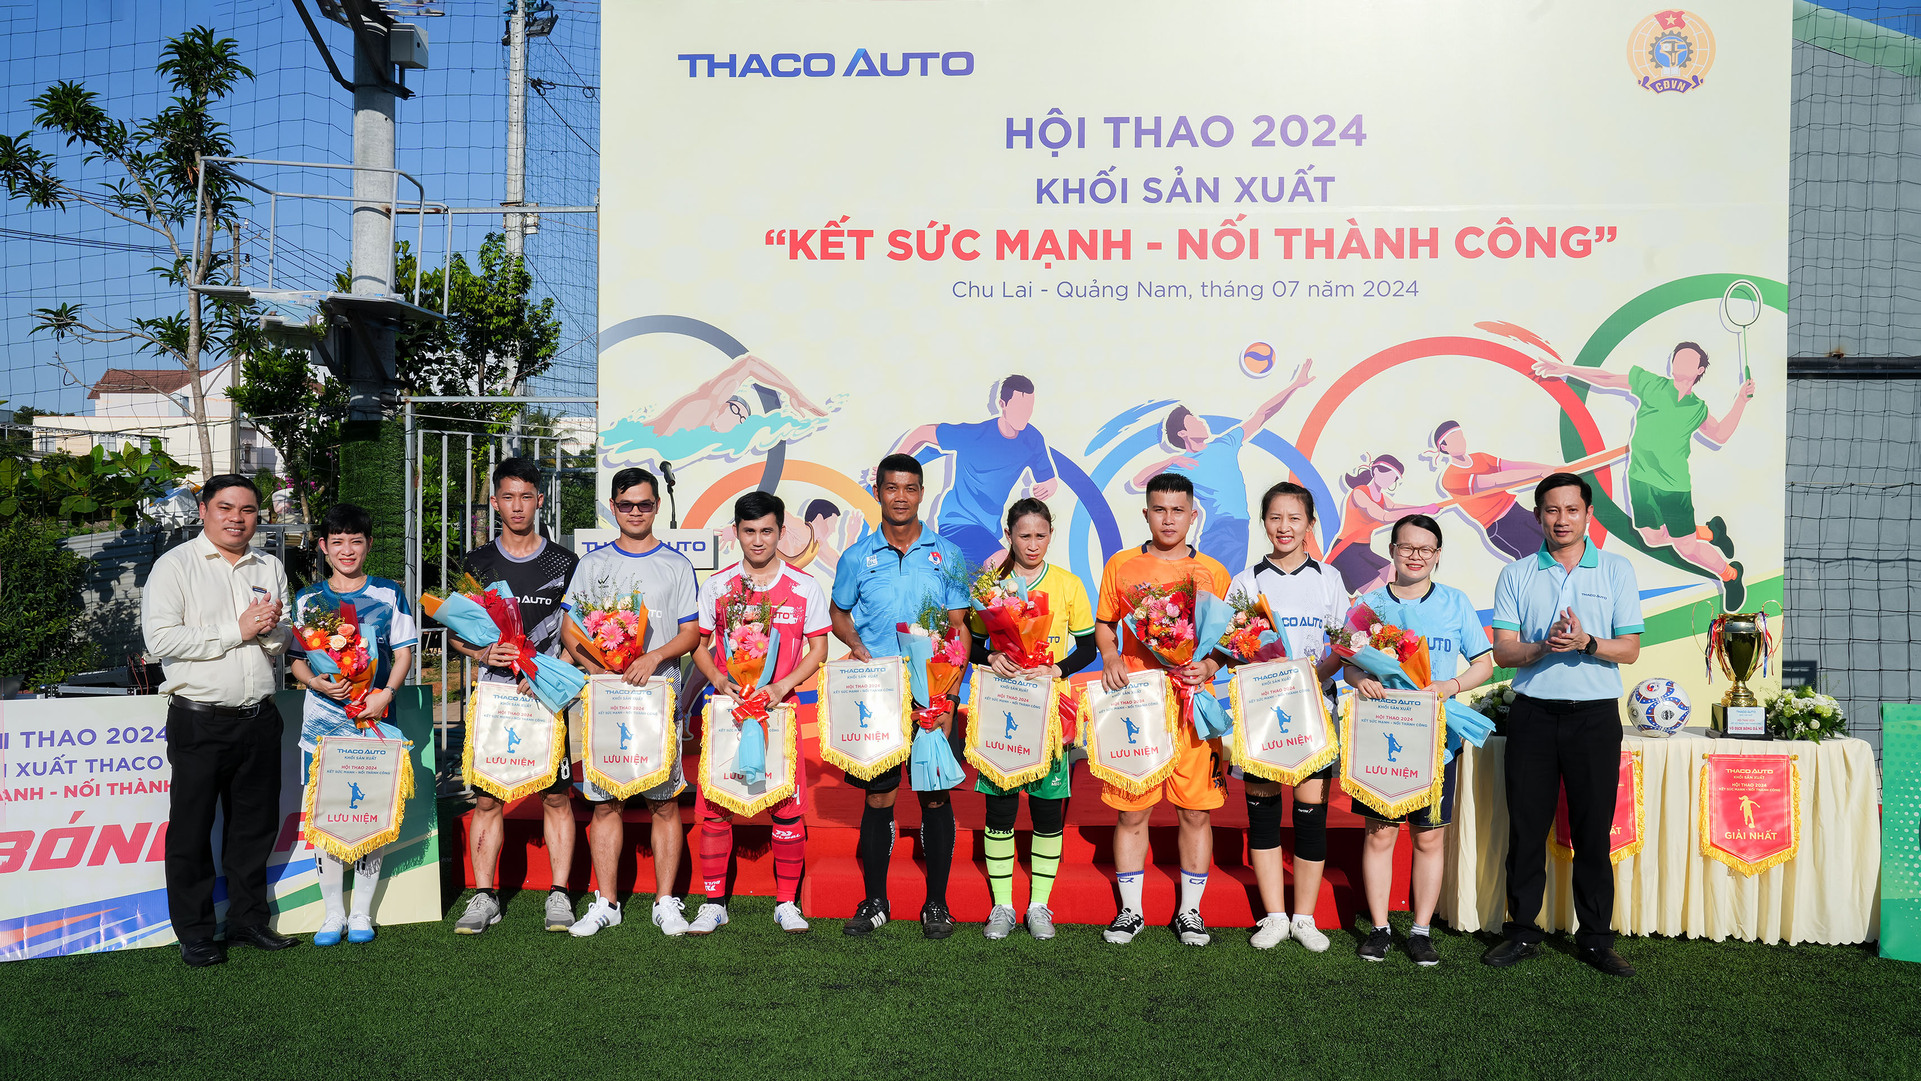 Khối Sản xuất THACO AUTO khai mạc Hội thao “Kết sức mạnh - Nối thành công” năm 2024